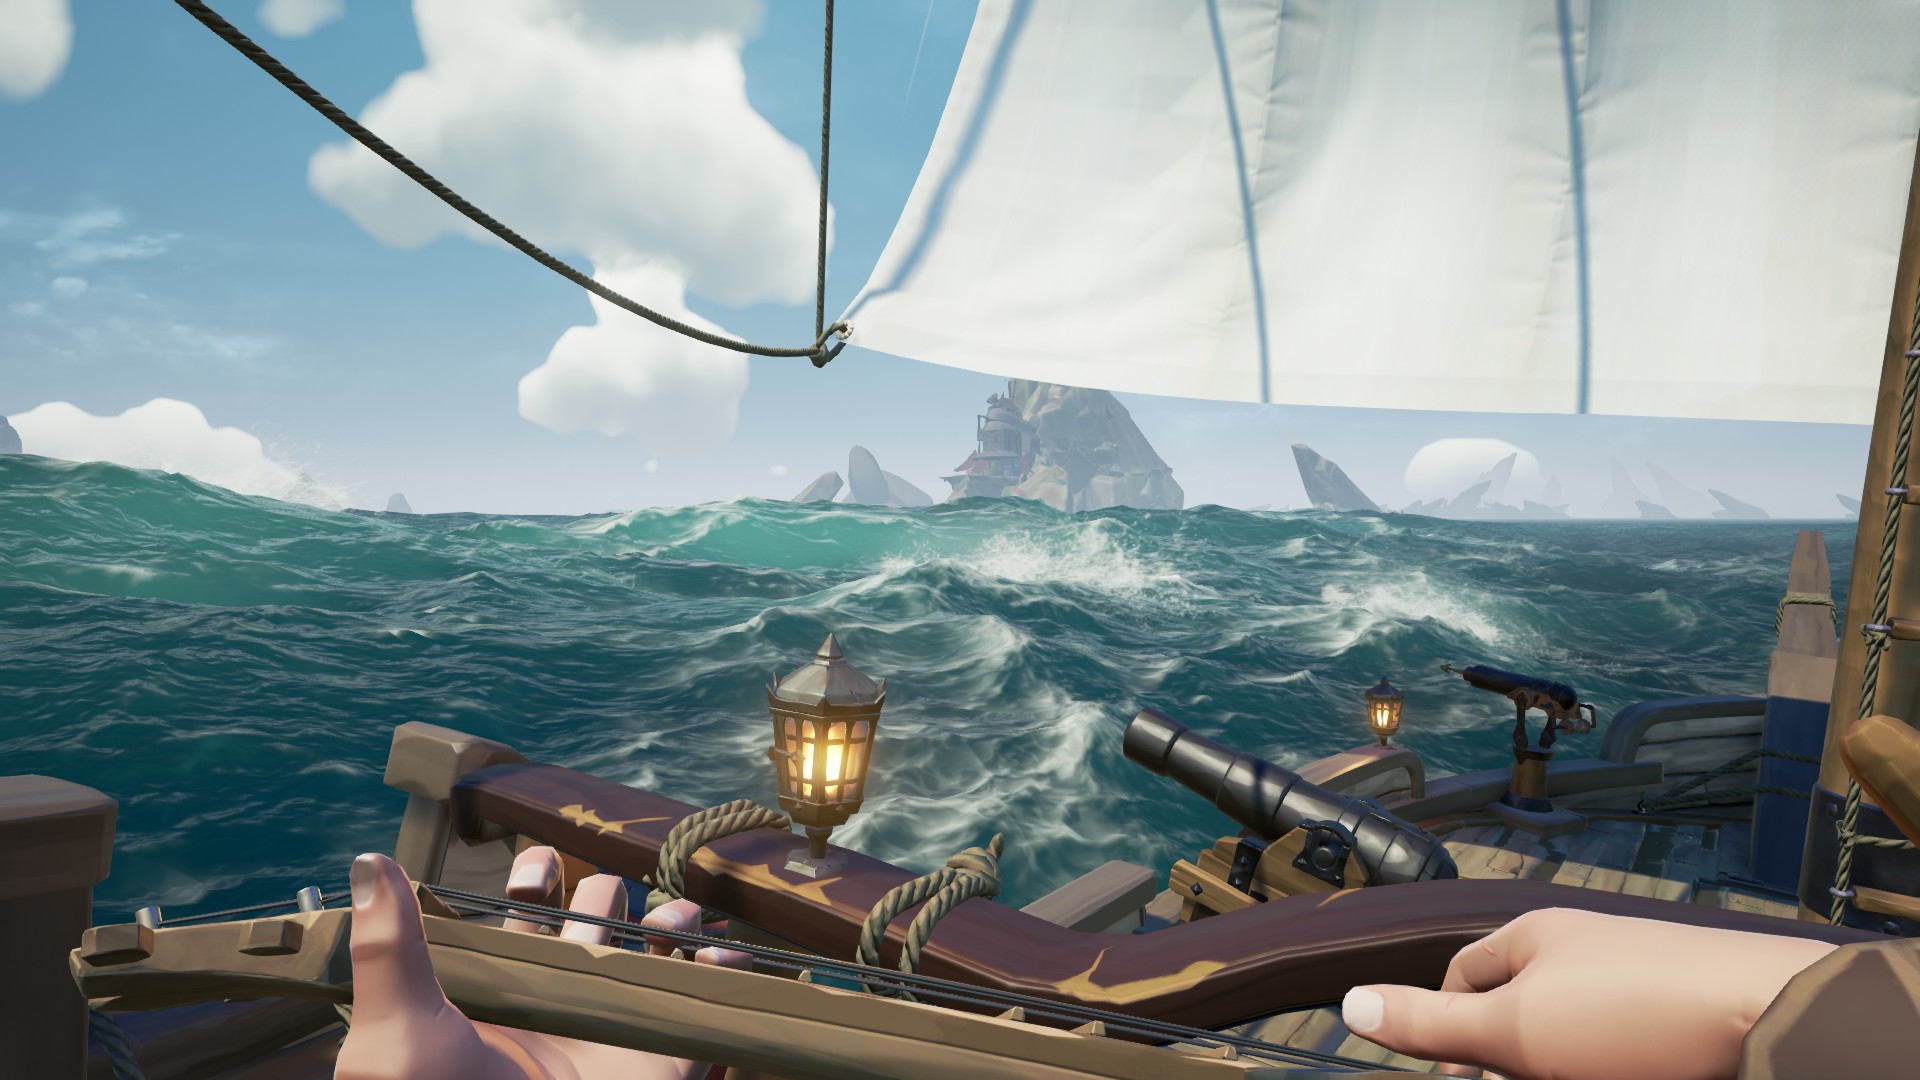 Mon pirate joue d'un instrument alors qu'il navigue.